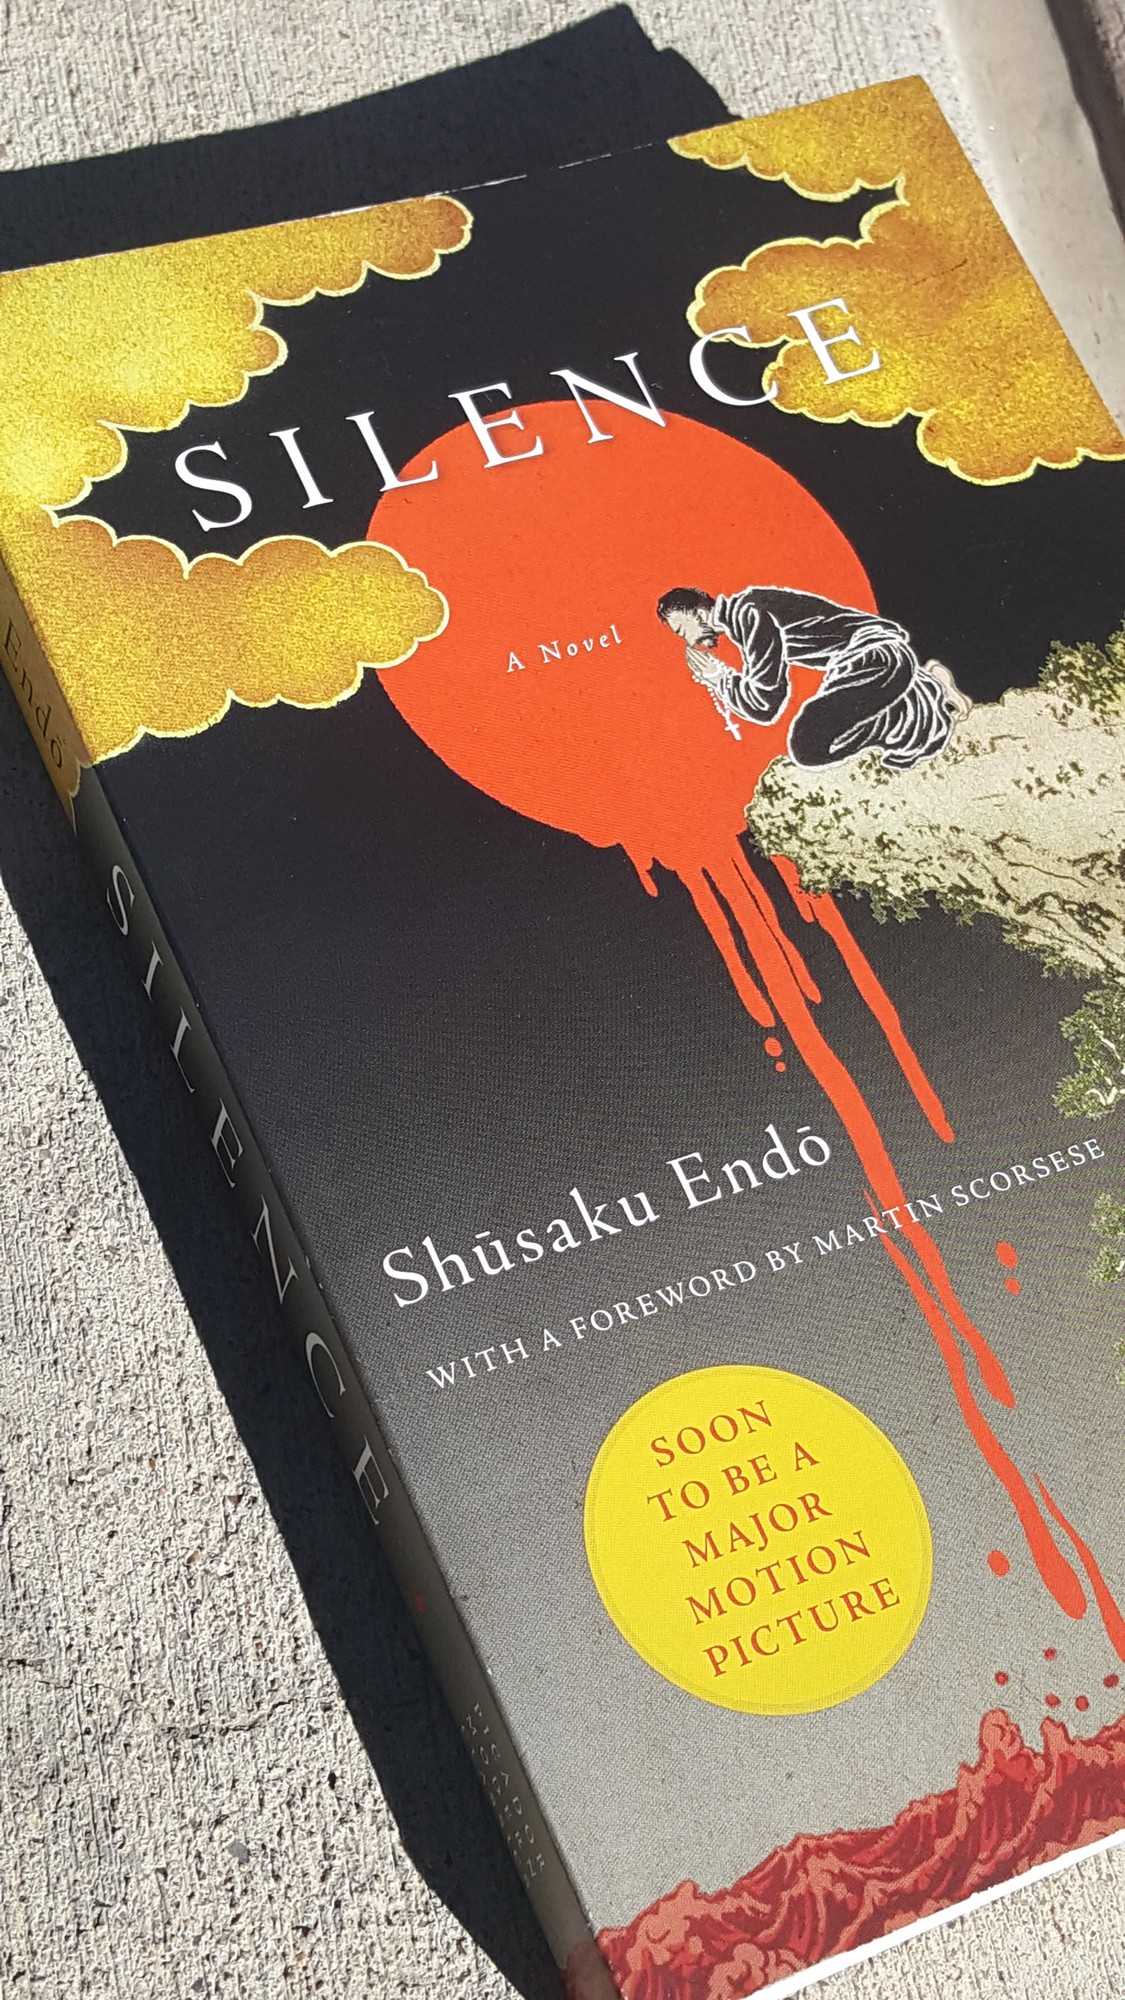 book review silence shusaku endo